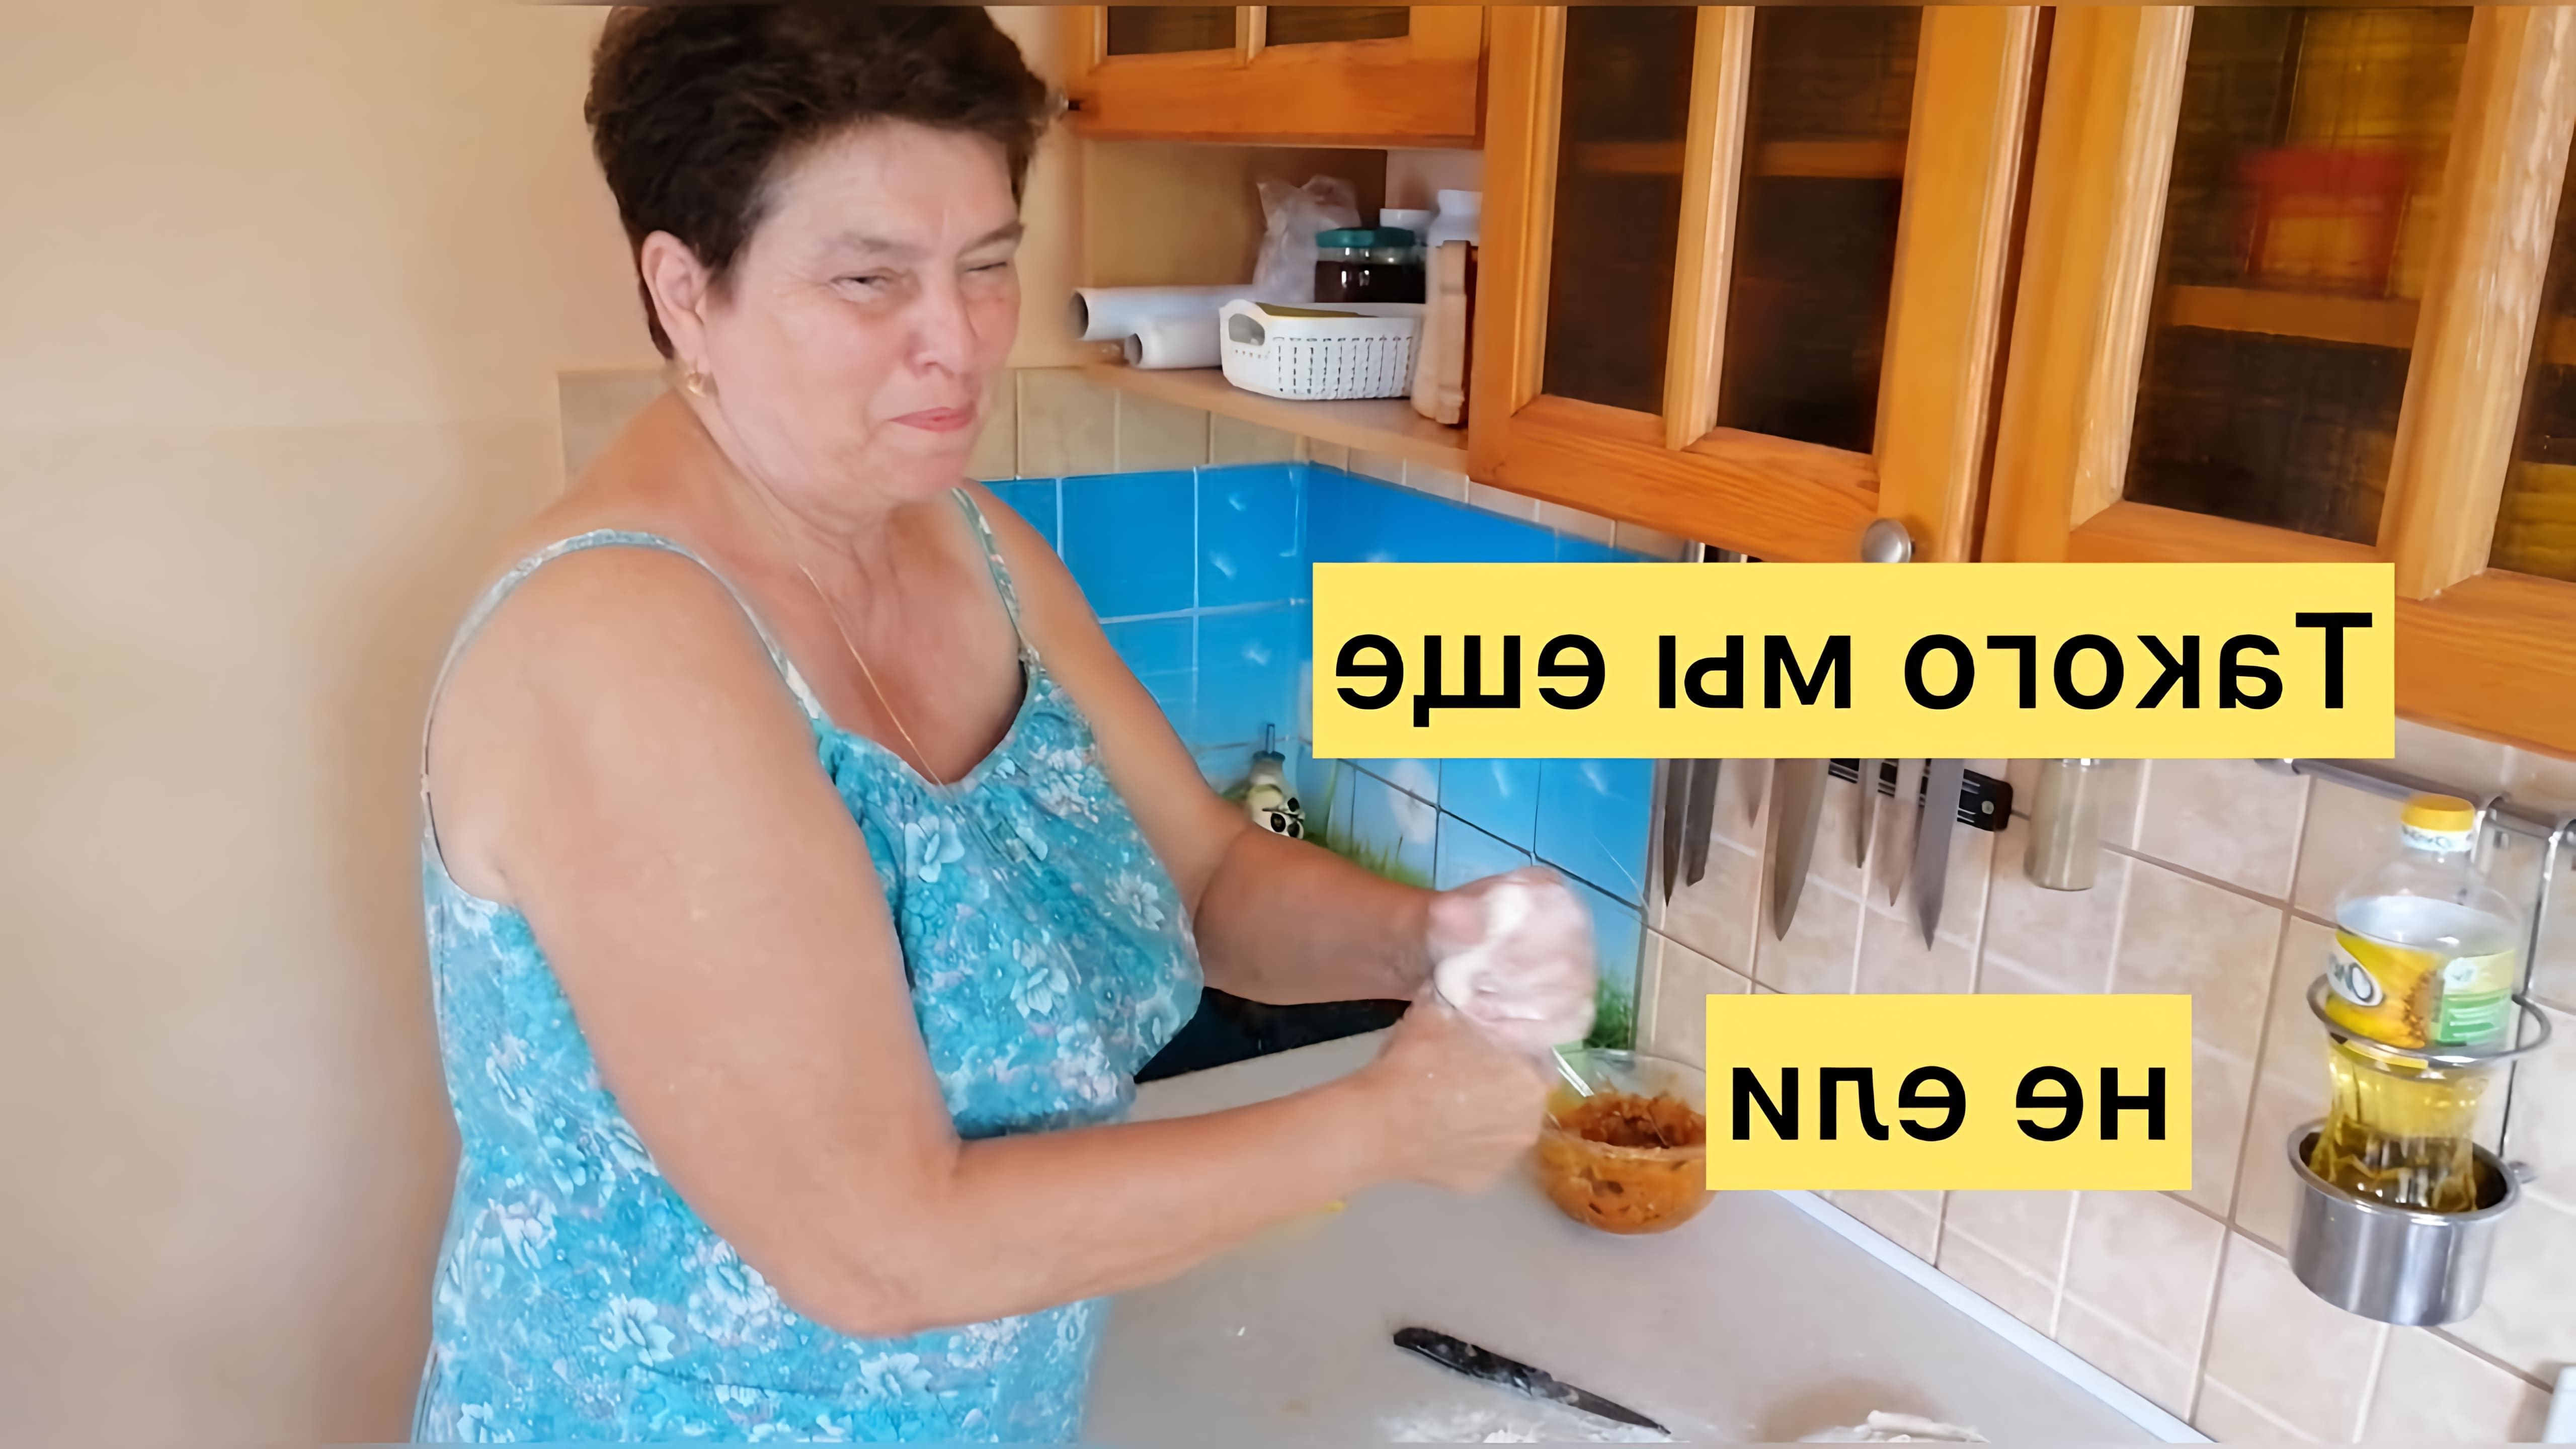 В этом видео демонстрируется процесс приготовления тунца в духовке, а также рассказывается о других продуктах, которые были использованы в процессе